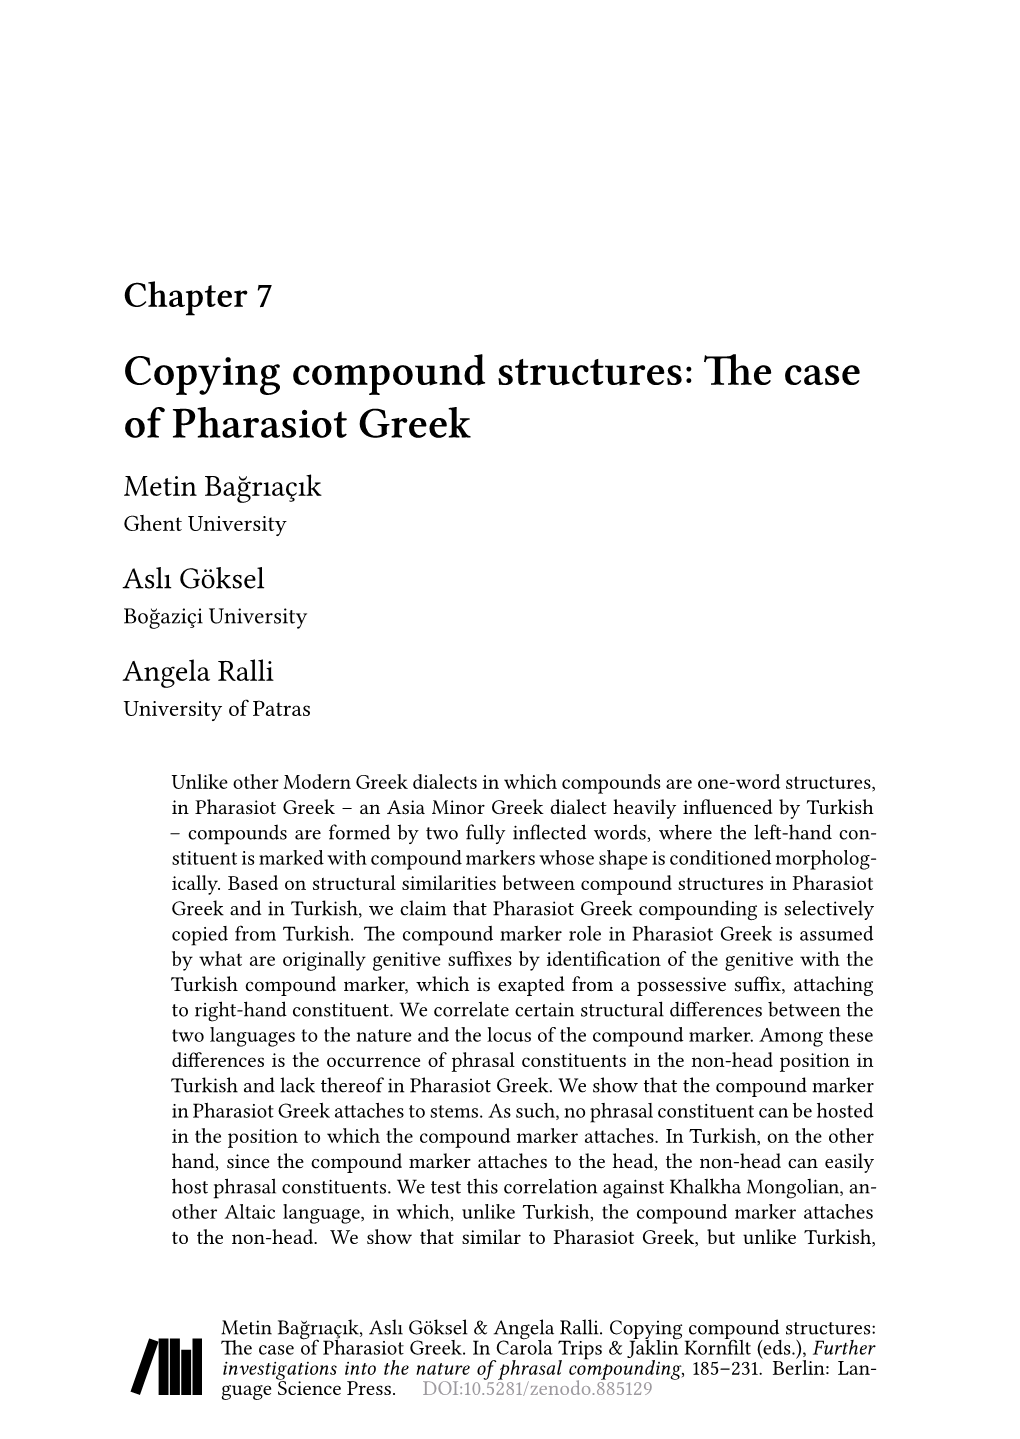 The Case of Pharasiot Greek Metin Bağrıaçık Ghent University Aslı Göksel Boğaziçi University Angela Ralli University of Patras